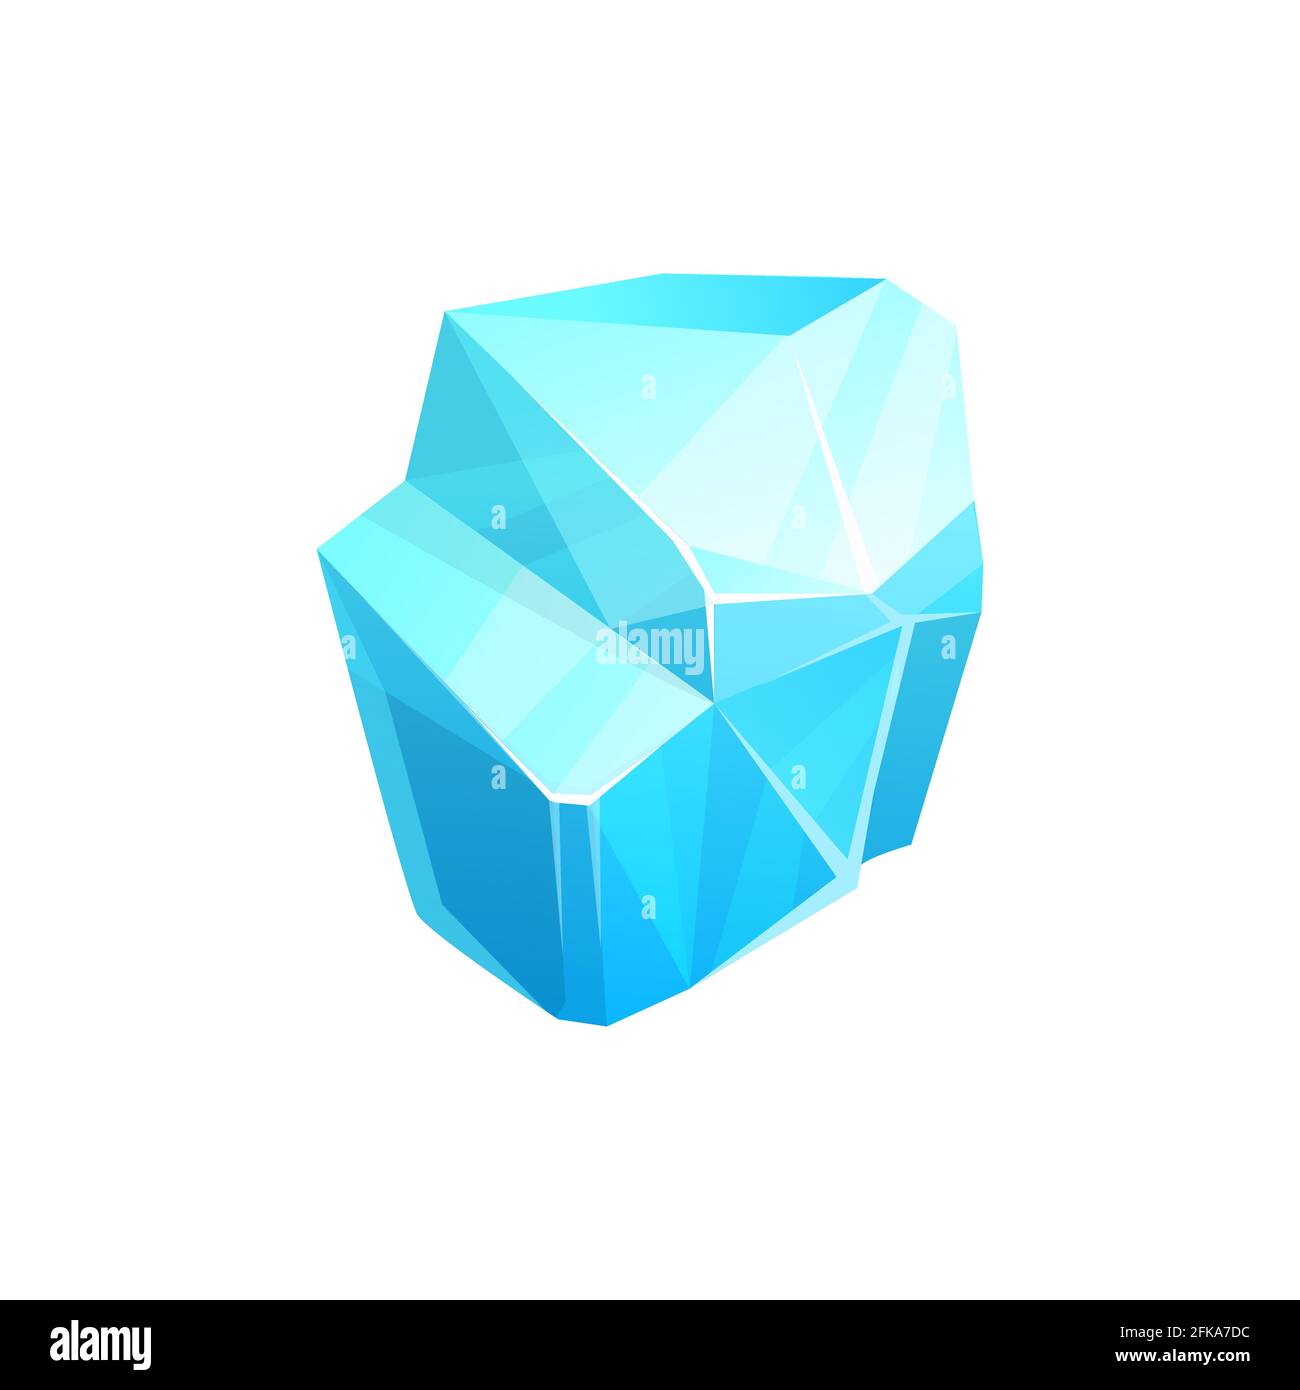 Eiskristall, blaues Stück Eisscholle, Vektorsalz-Mineral, Schneeflochenkappe oder Eiszapfen. Cartoon ui oder gui Game Design Element, Eiswürfel oder Glasblock iso Stock Vektor